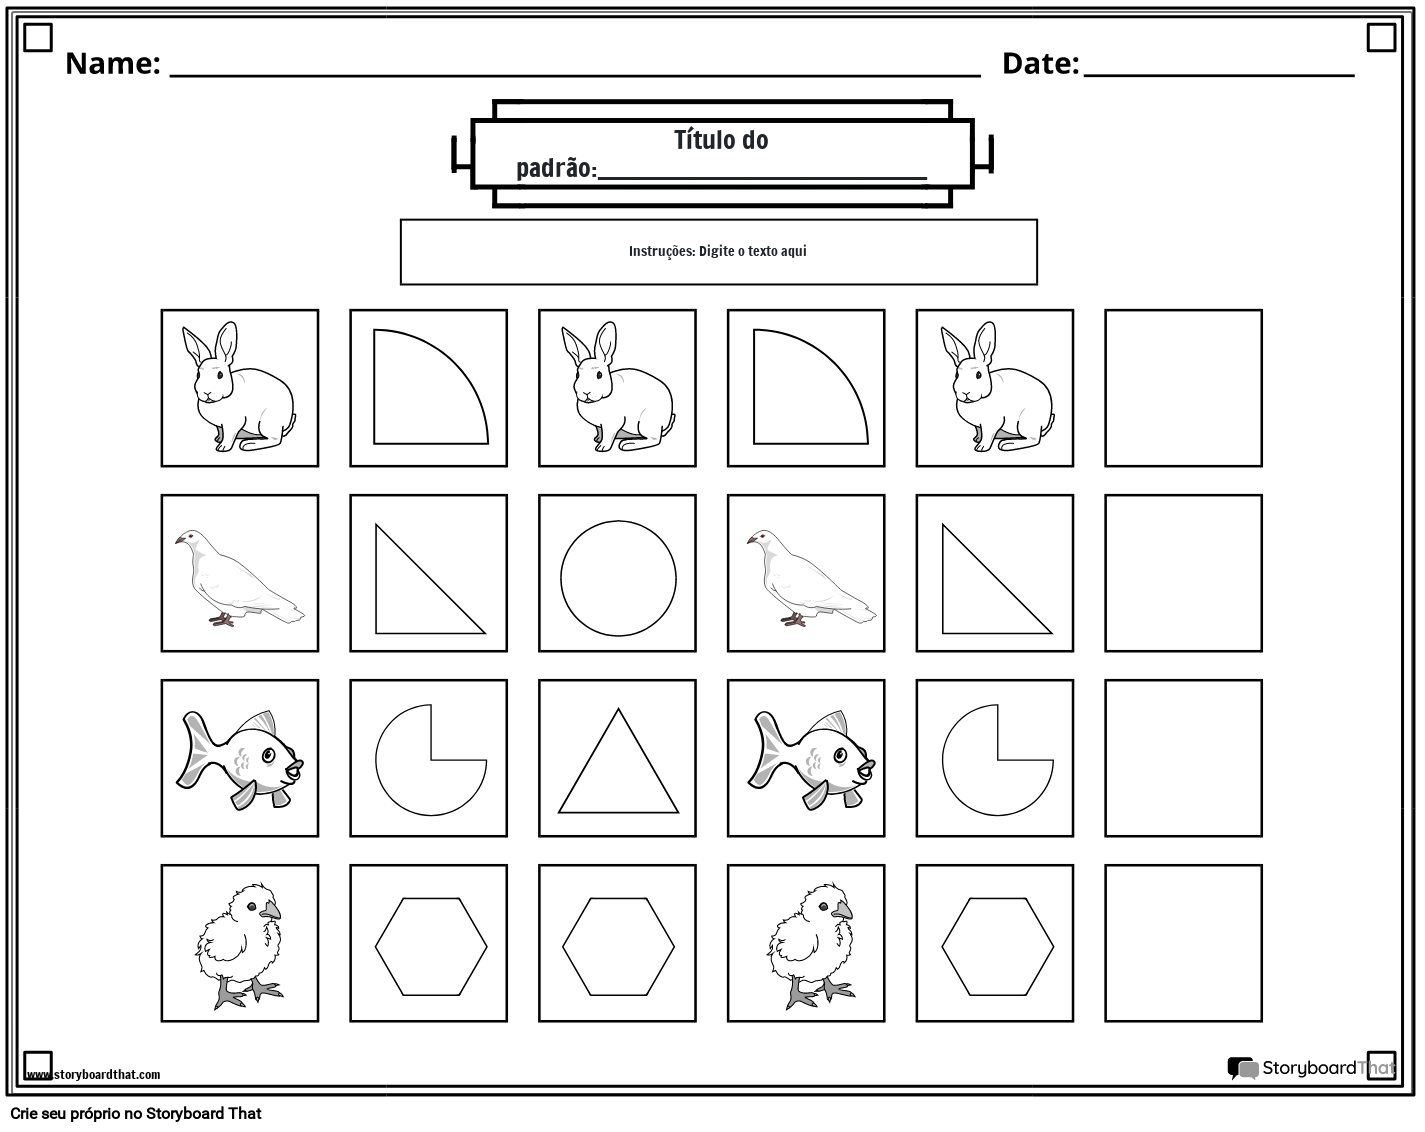 Planilha de padrões de animais e formas (preto e branco)